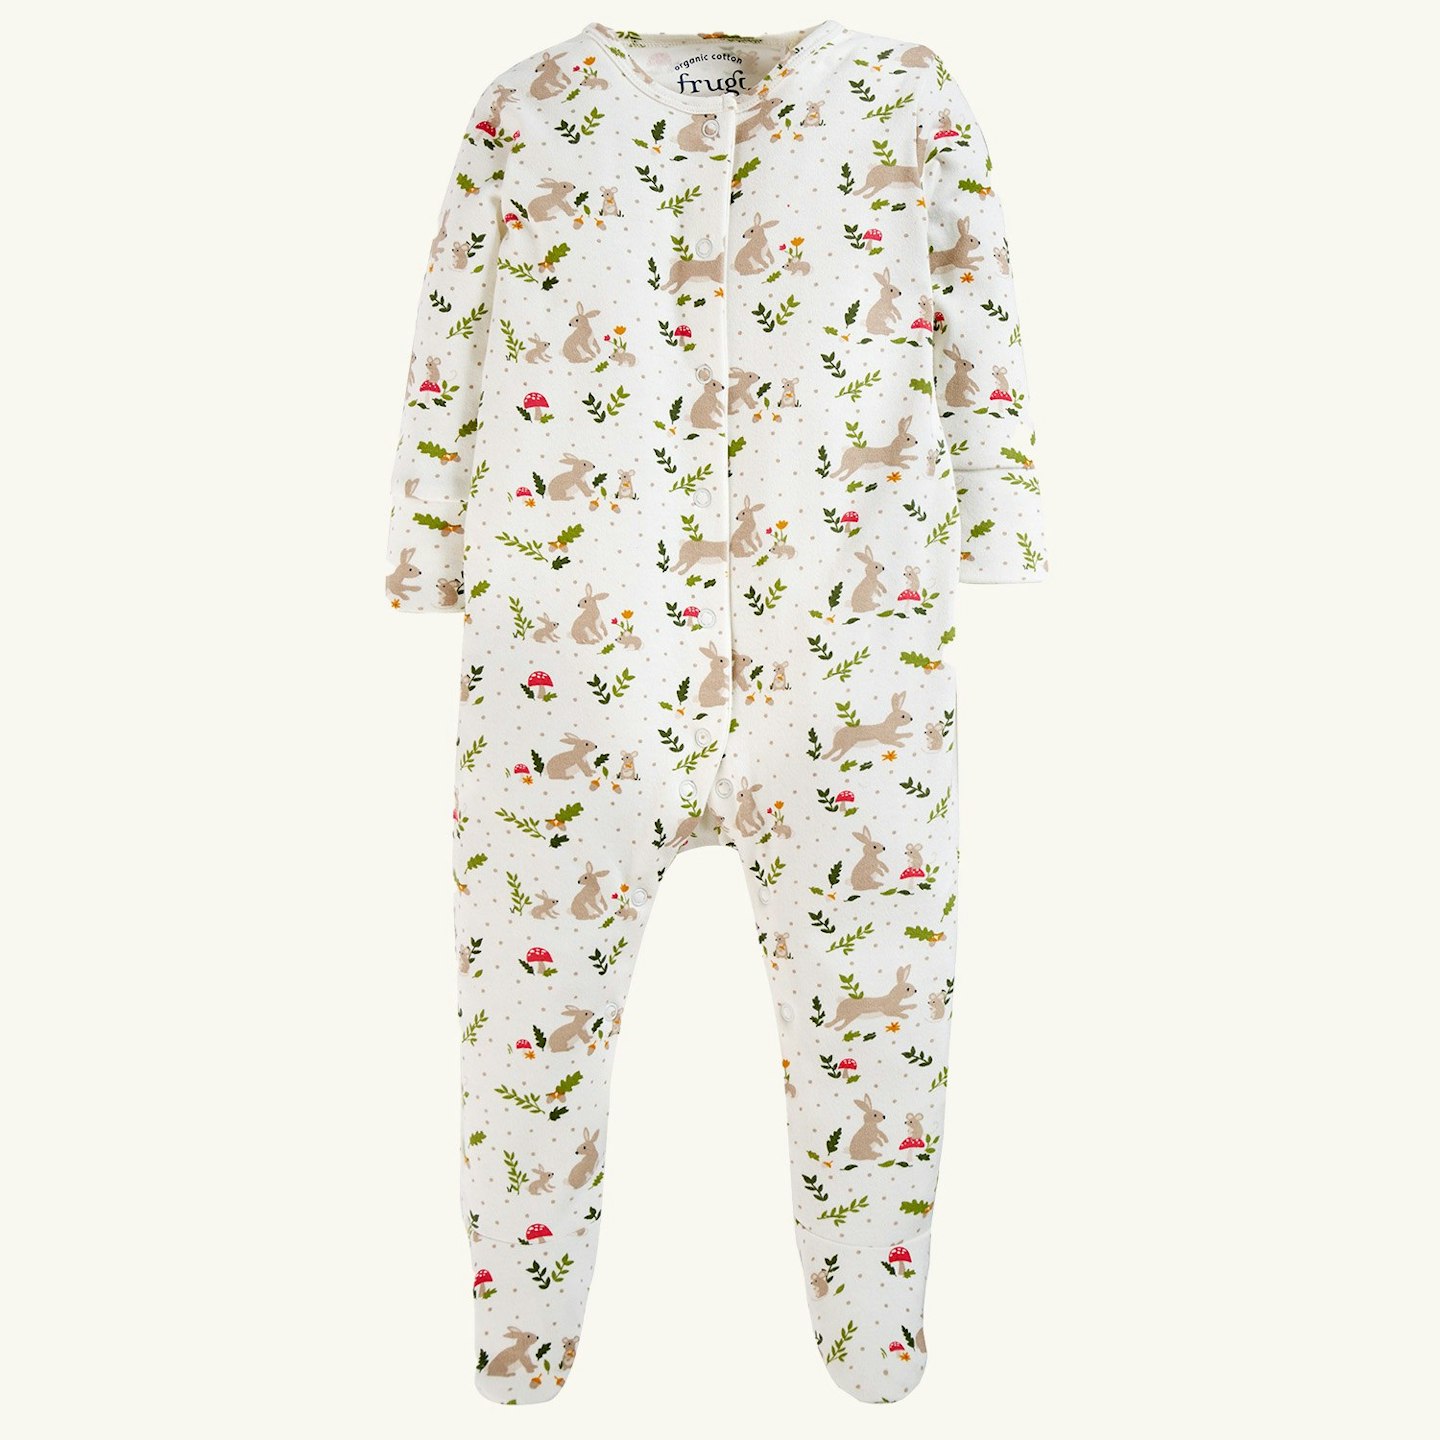 Frugi - Baby sleepwear and sleepsuits